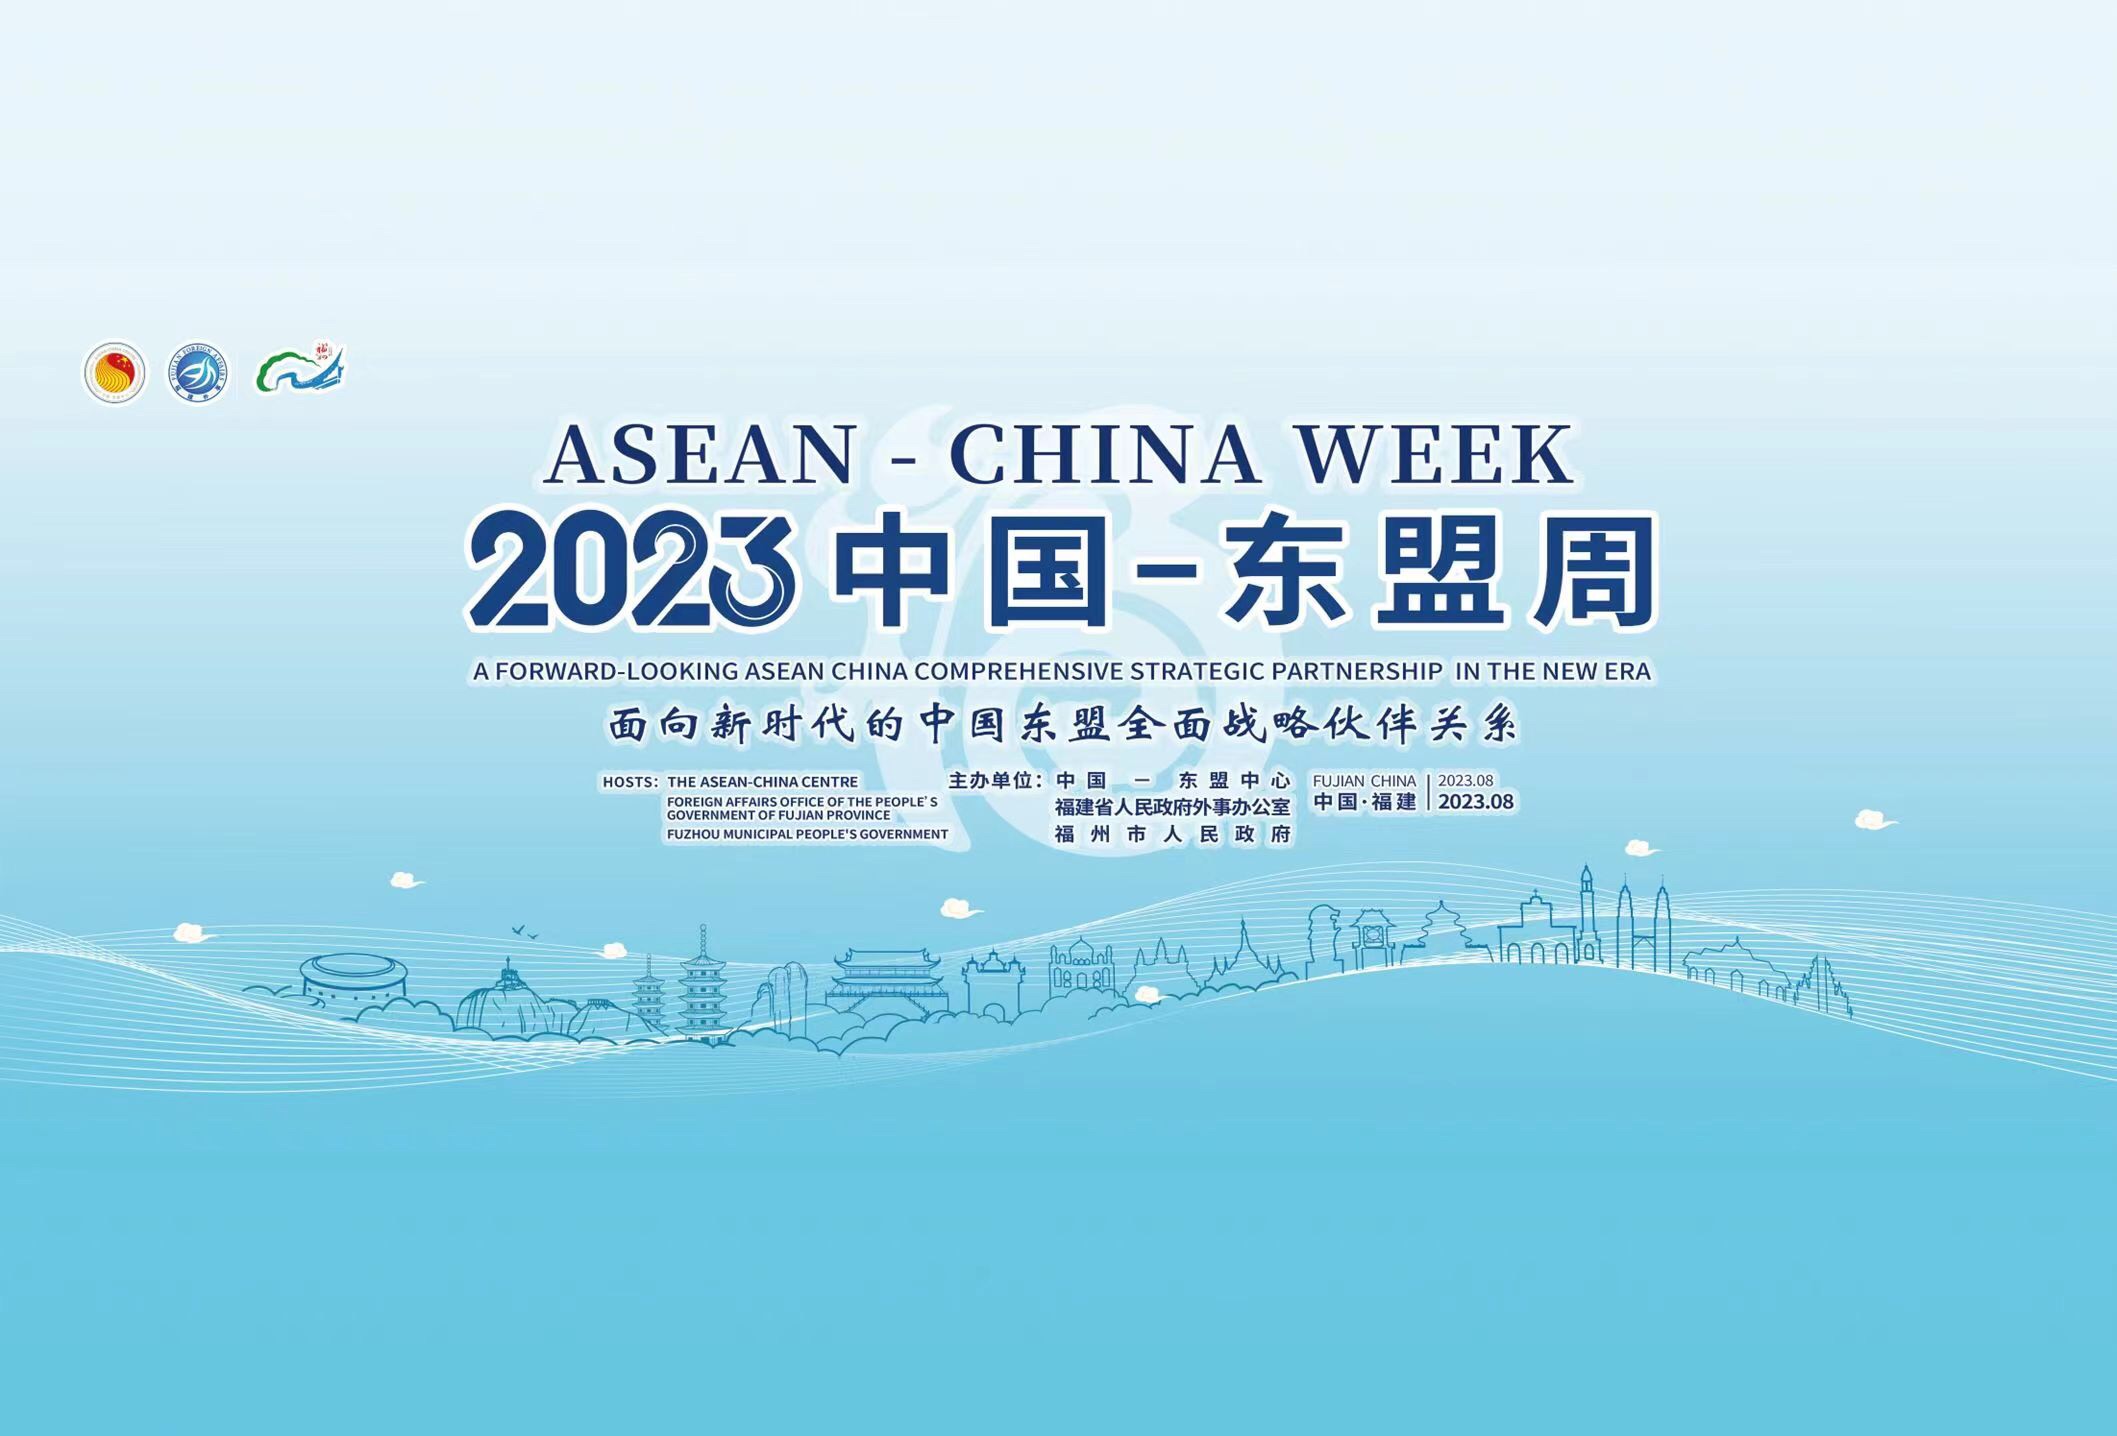 ASEAN-China Week 2023 Opening Tomorrow